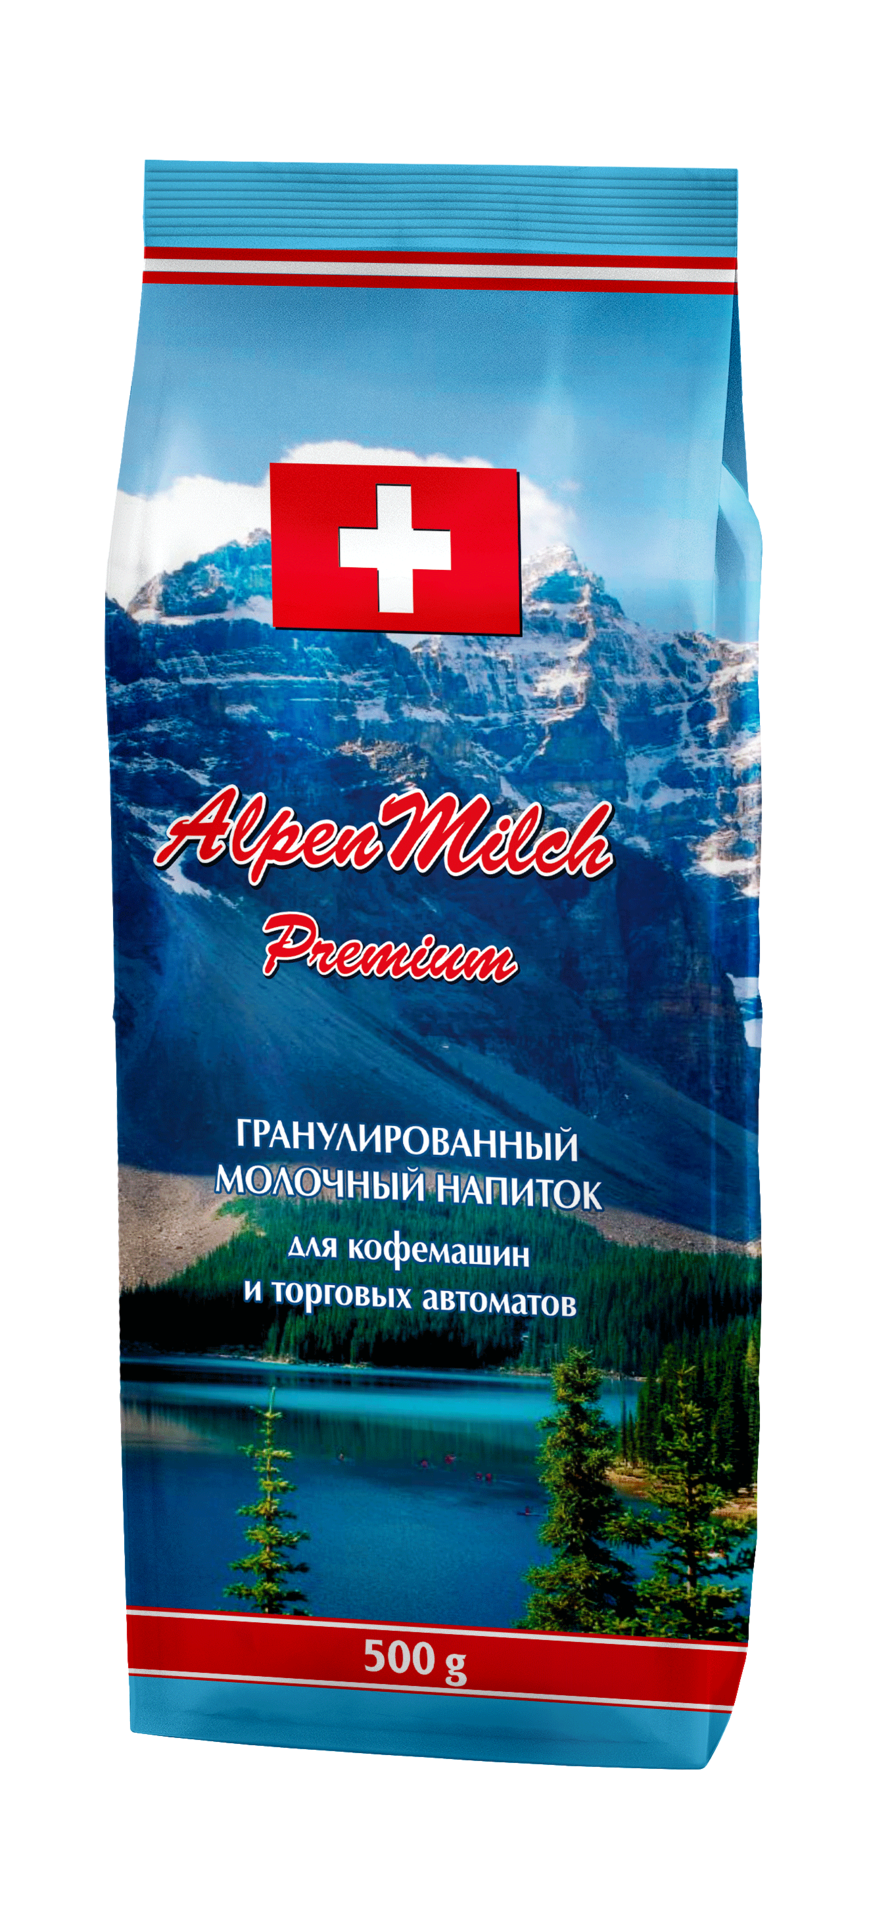 paket-alpenmilch-320kh370